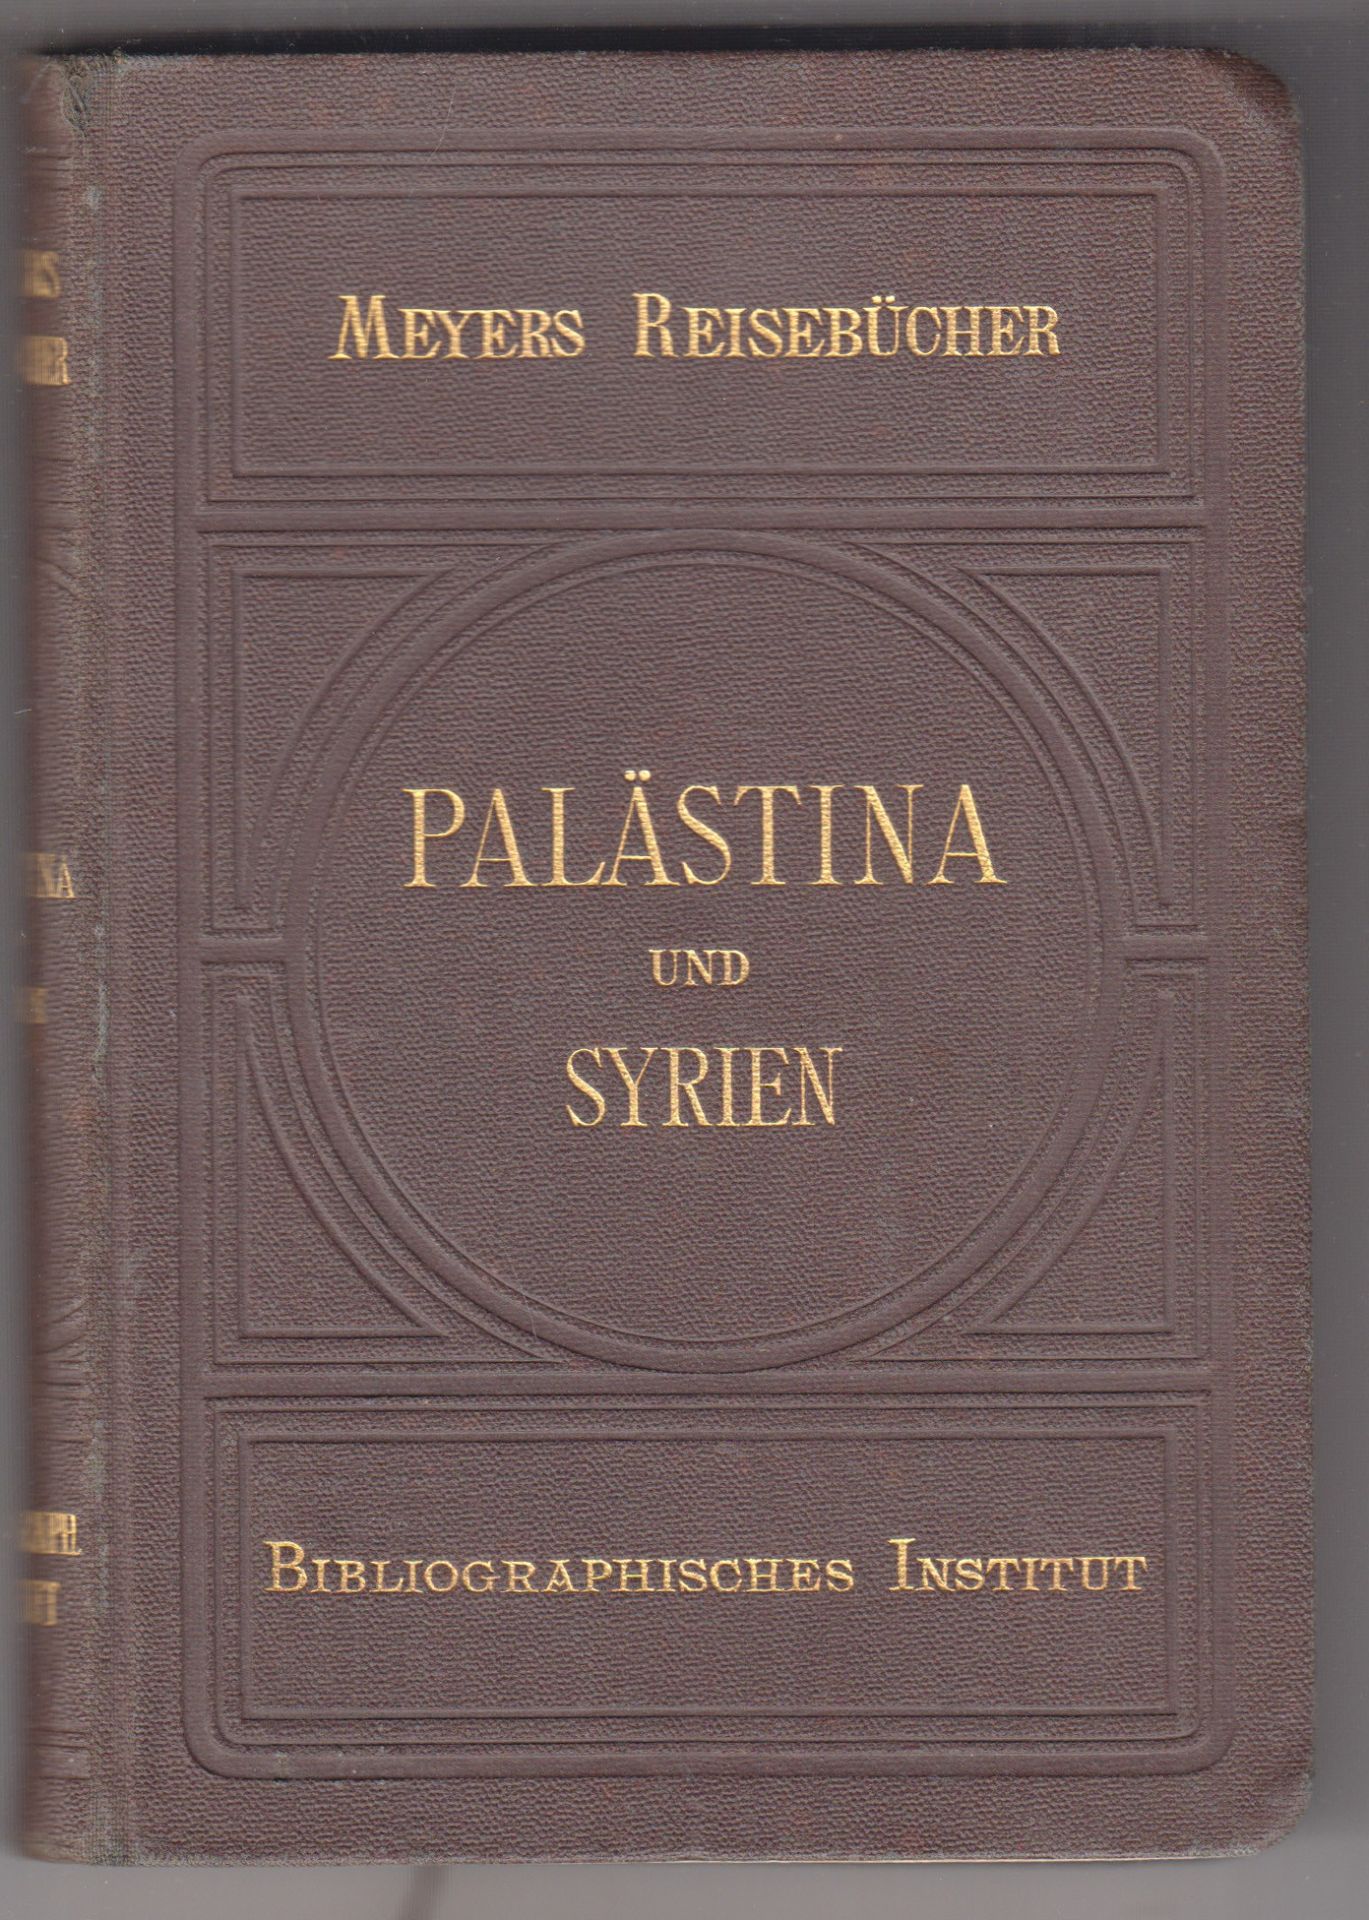  Palstina und Syrien.